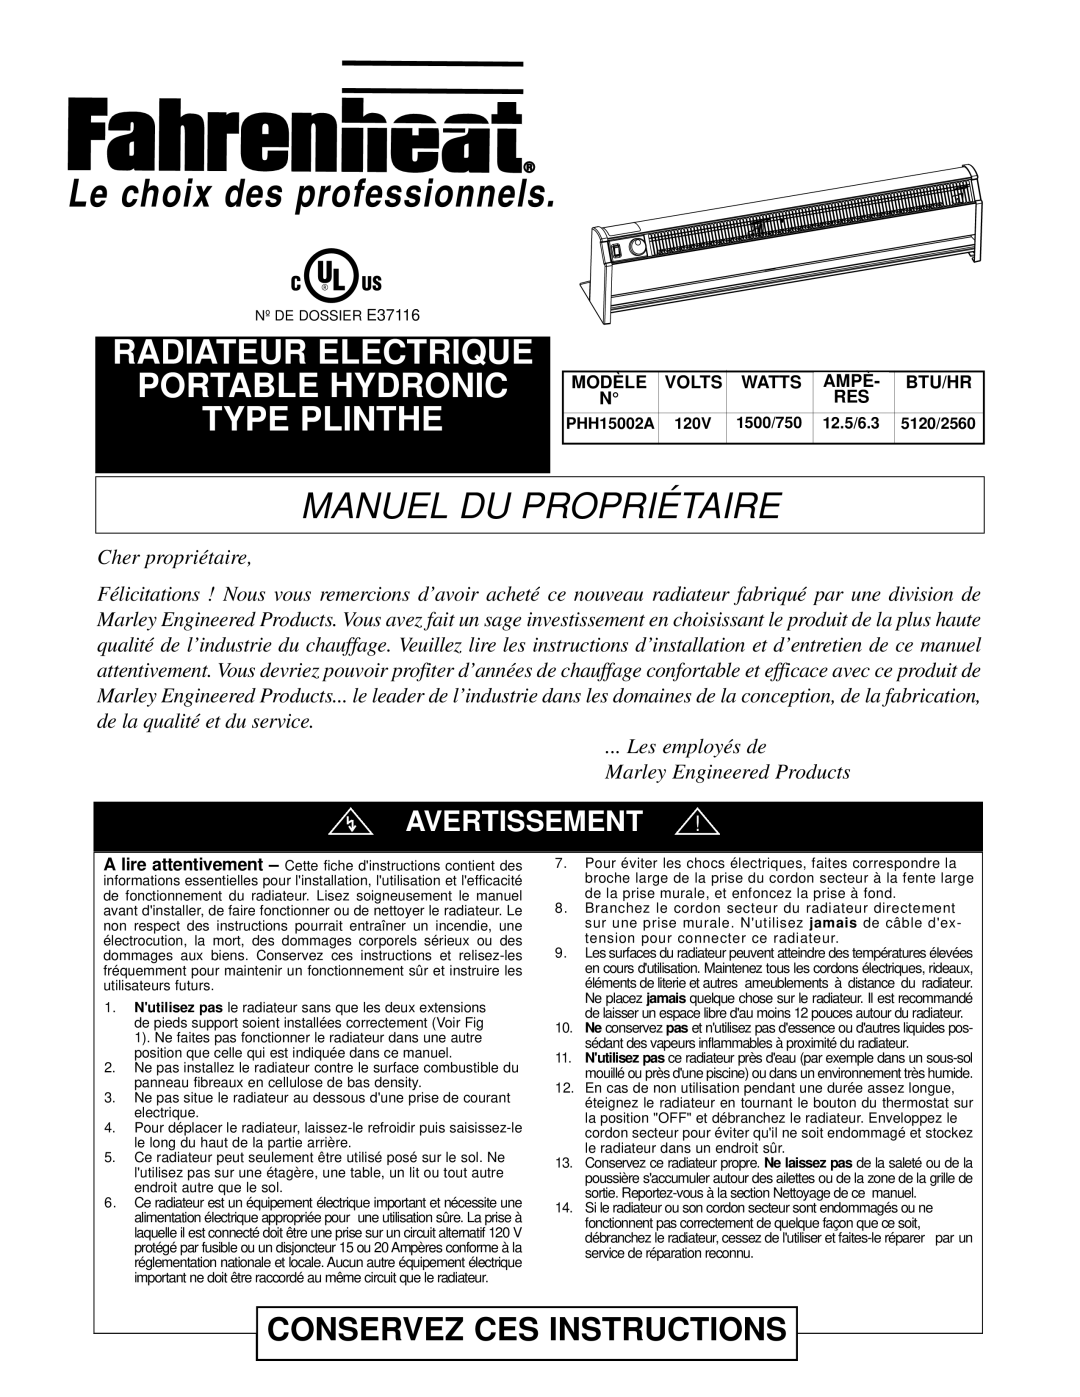 Nilfisk-ALTO PHH15002A Manuel Du Propriétaire, Avertissement, Cher propriétaire, Modè Le, Le choix des professionnels 